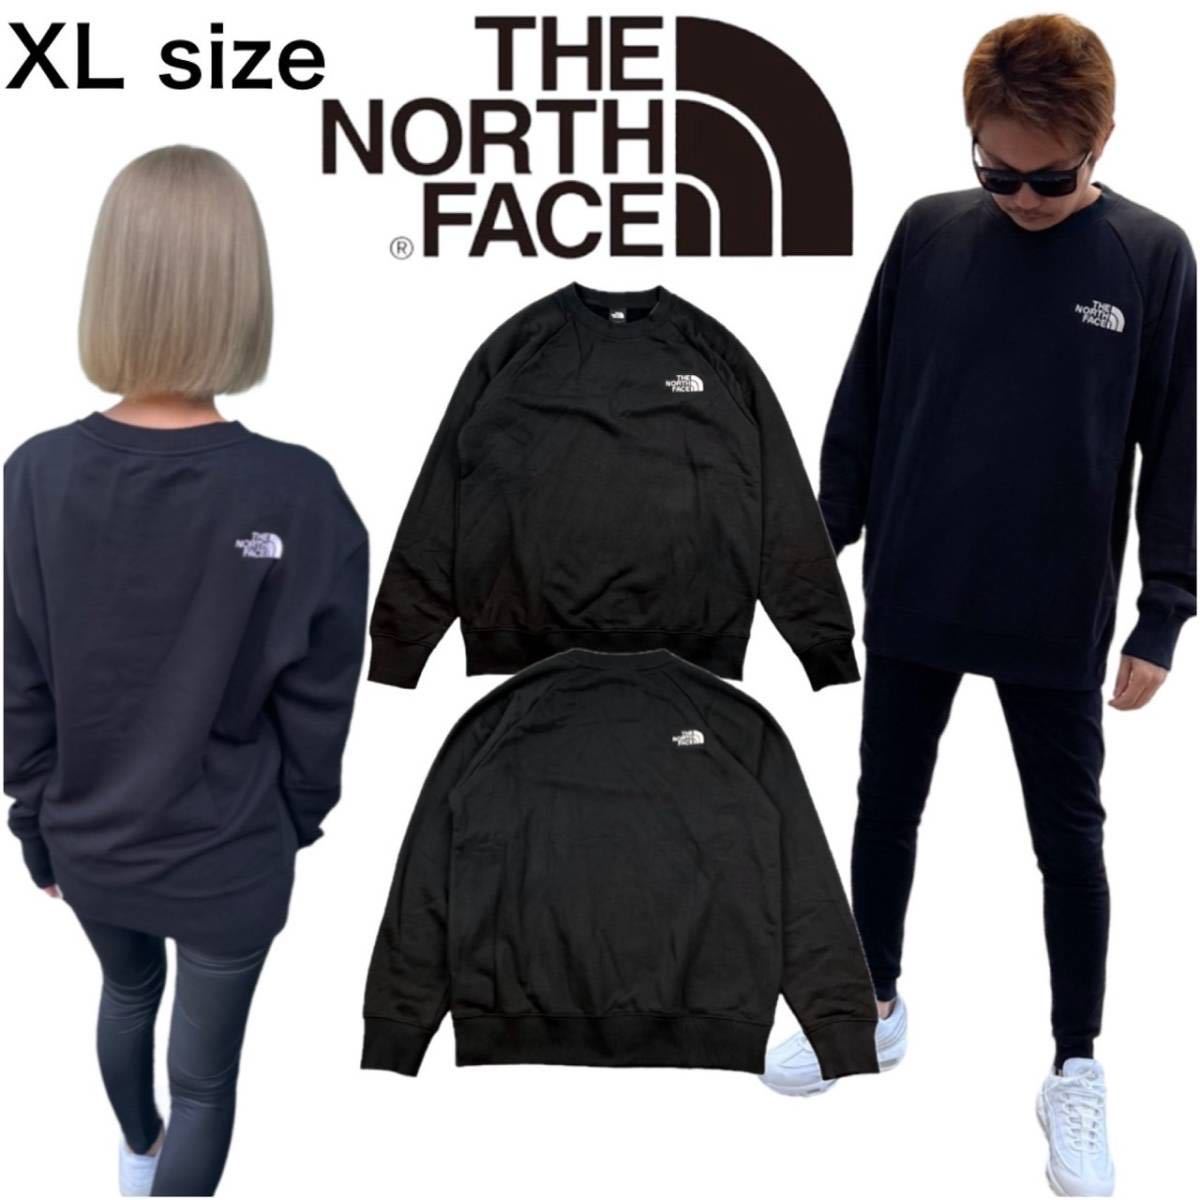 ザ ノースフェイス トレーナー NF0A5GKZ スウェット プルオーバー 裏起毛 ブラック XLサイズ THE NORTH FACE M SIMPLE LOGO CREW 新品